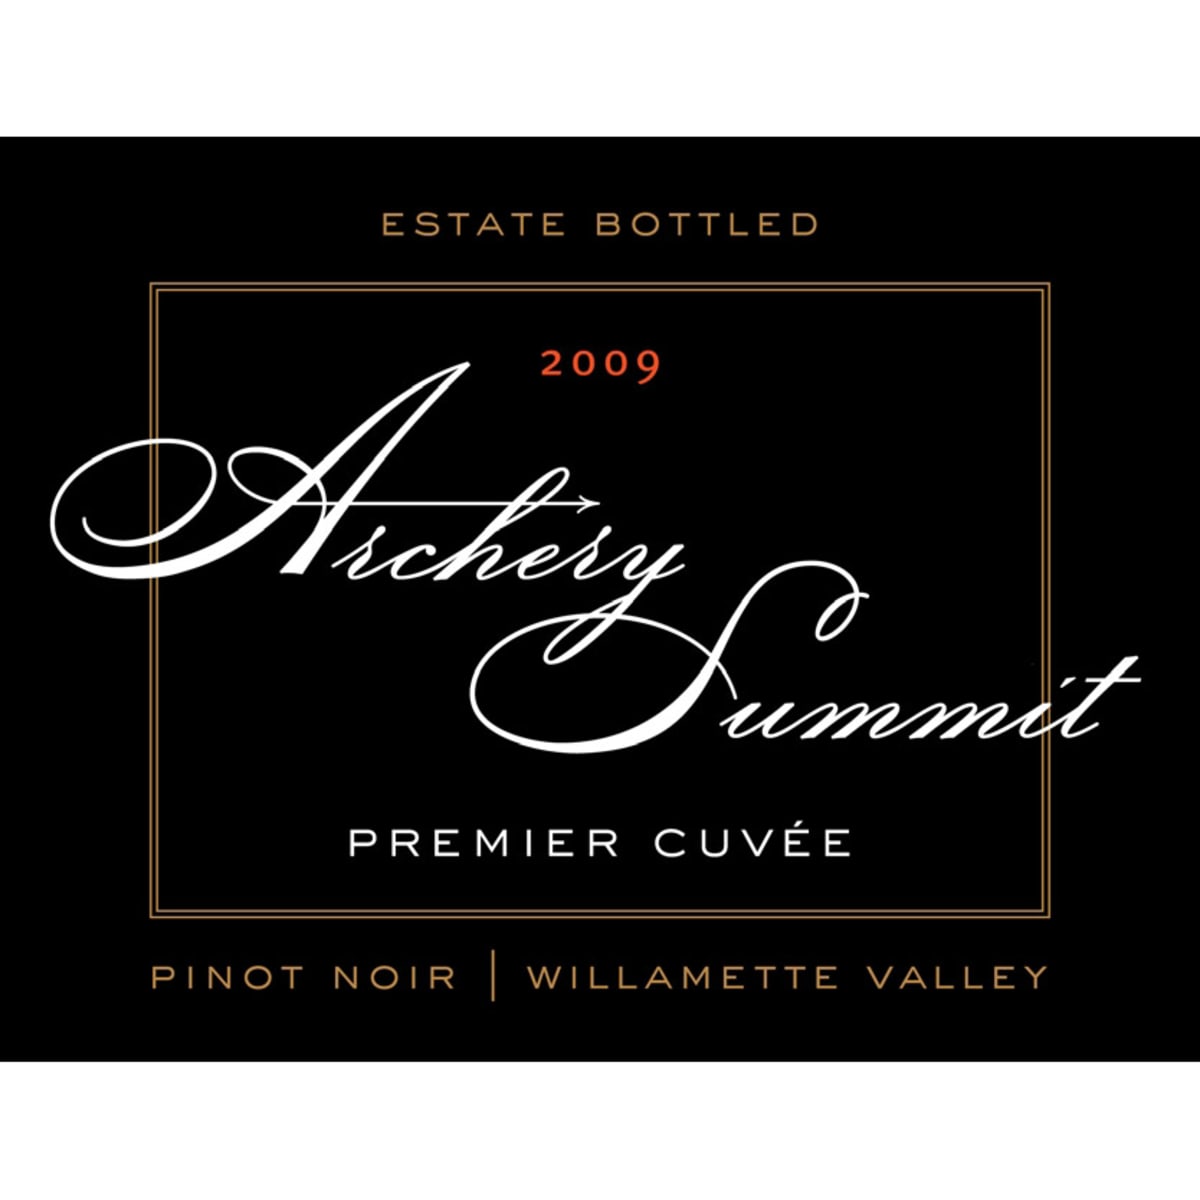 Archery Summit Premier Cuvee Pinot Noir 2009 Front Label